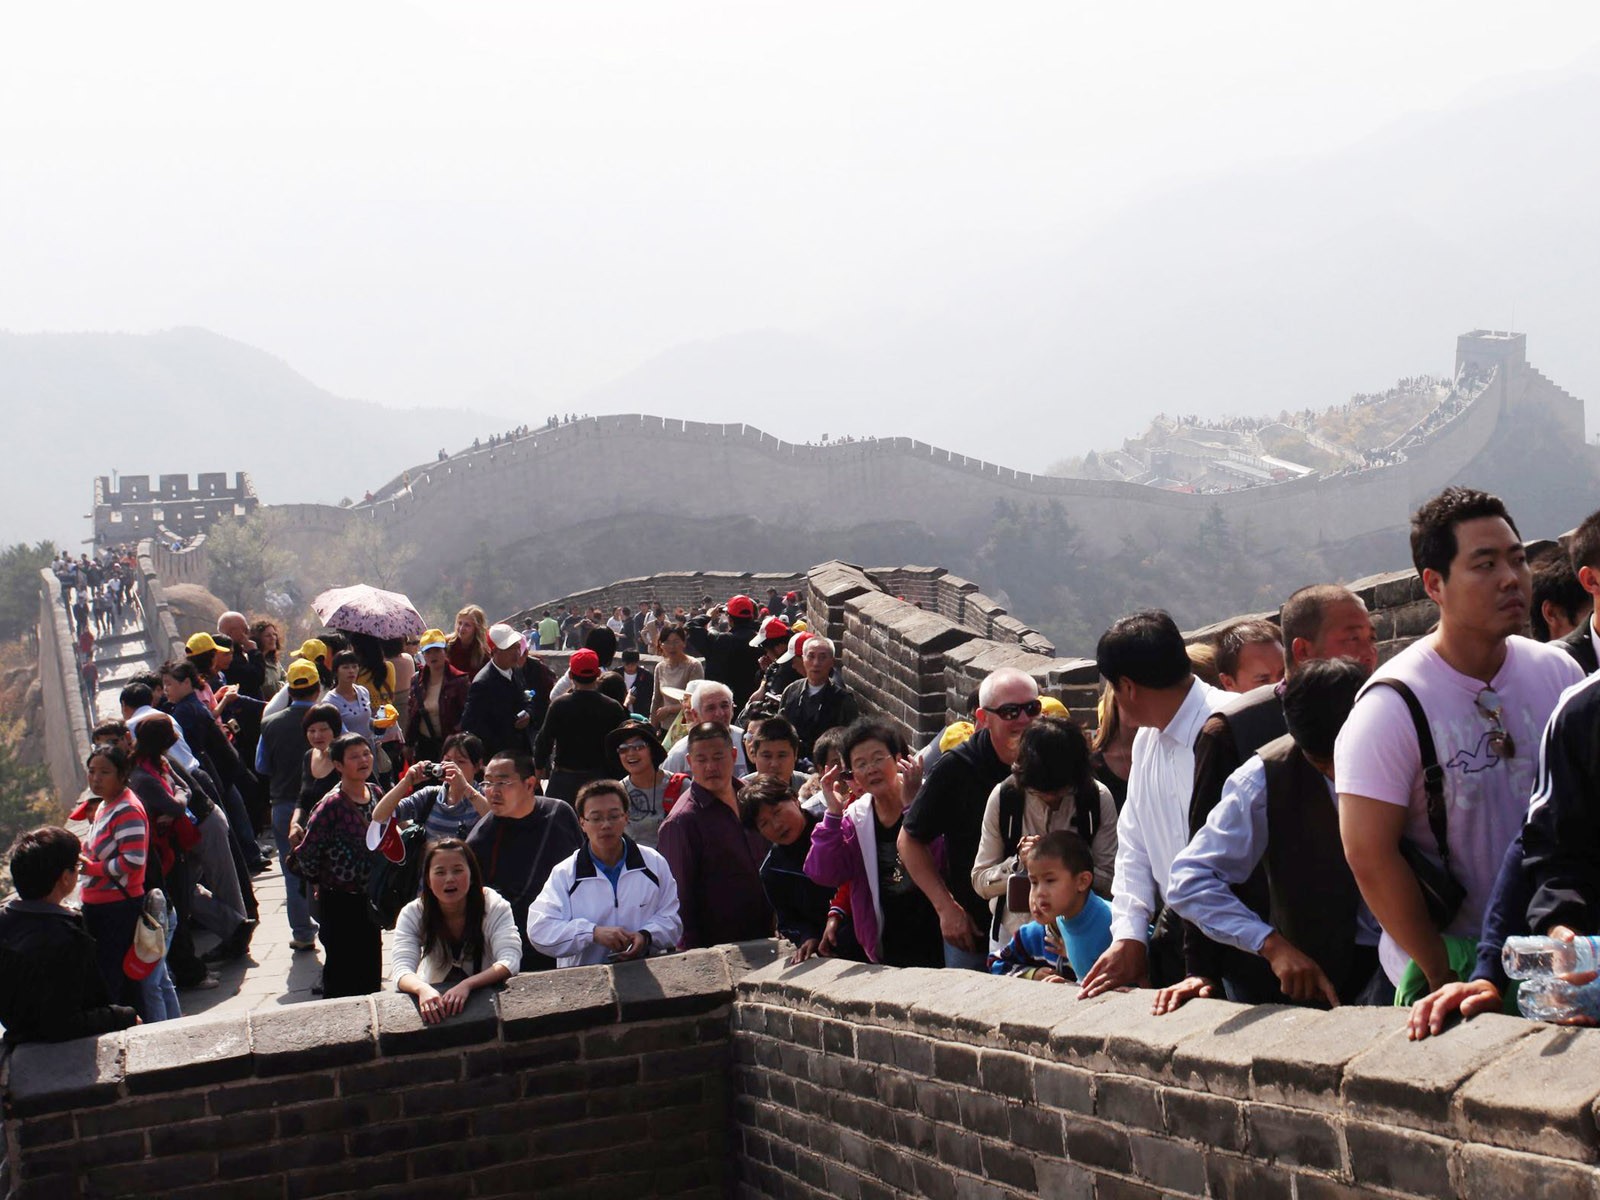 Beijing Tour - Badaling Great Wall (ggc works) #2 - 1600x1200